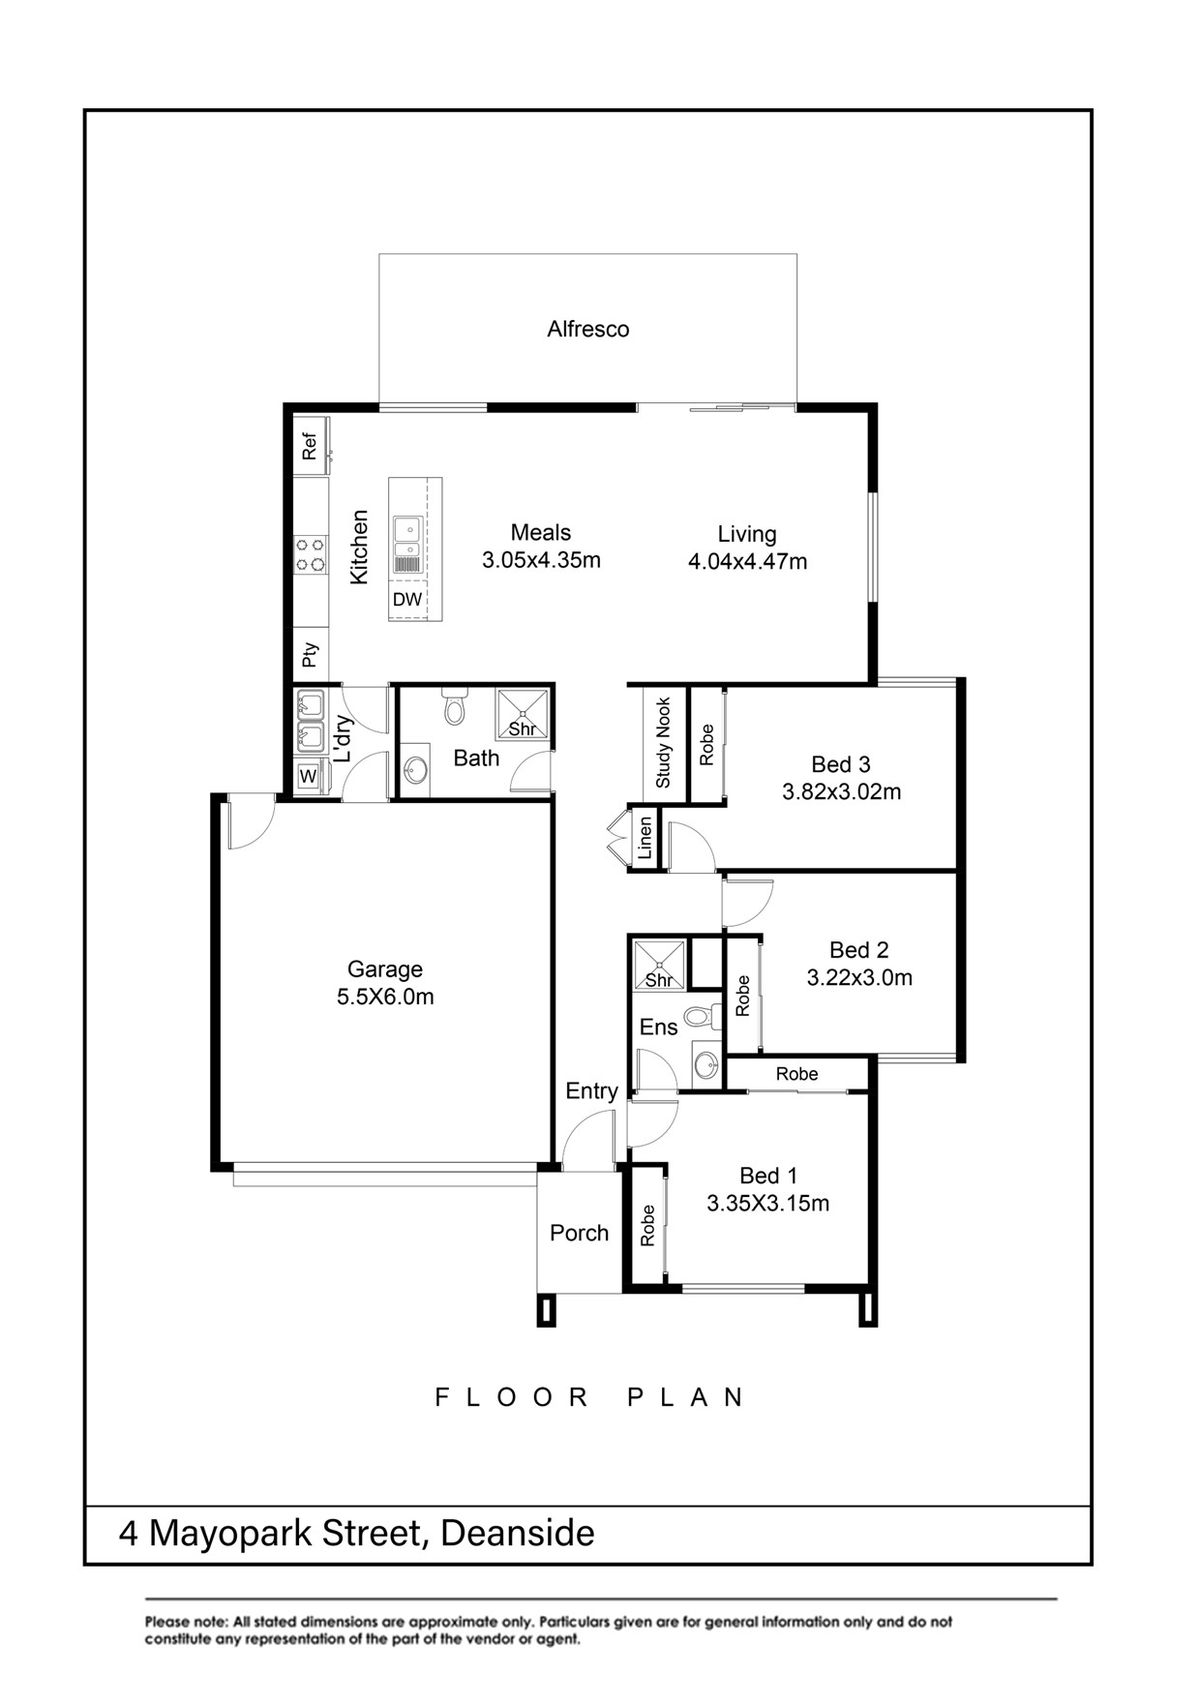 updated floor plan